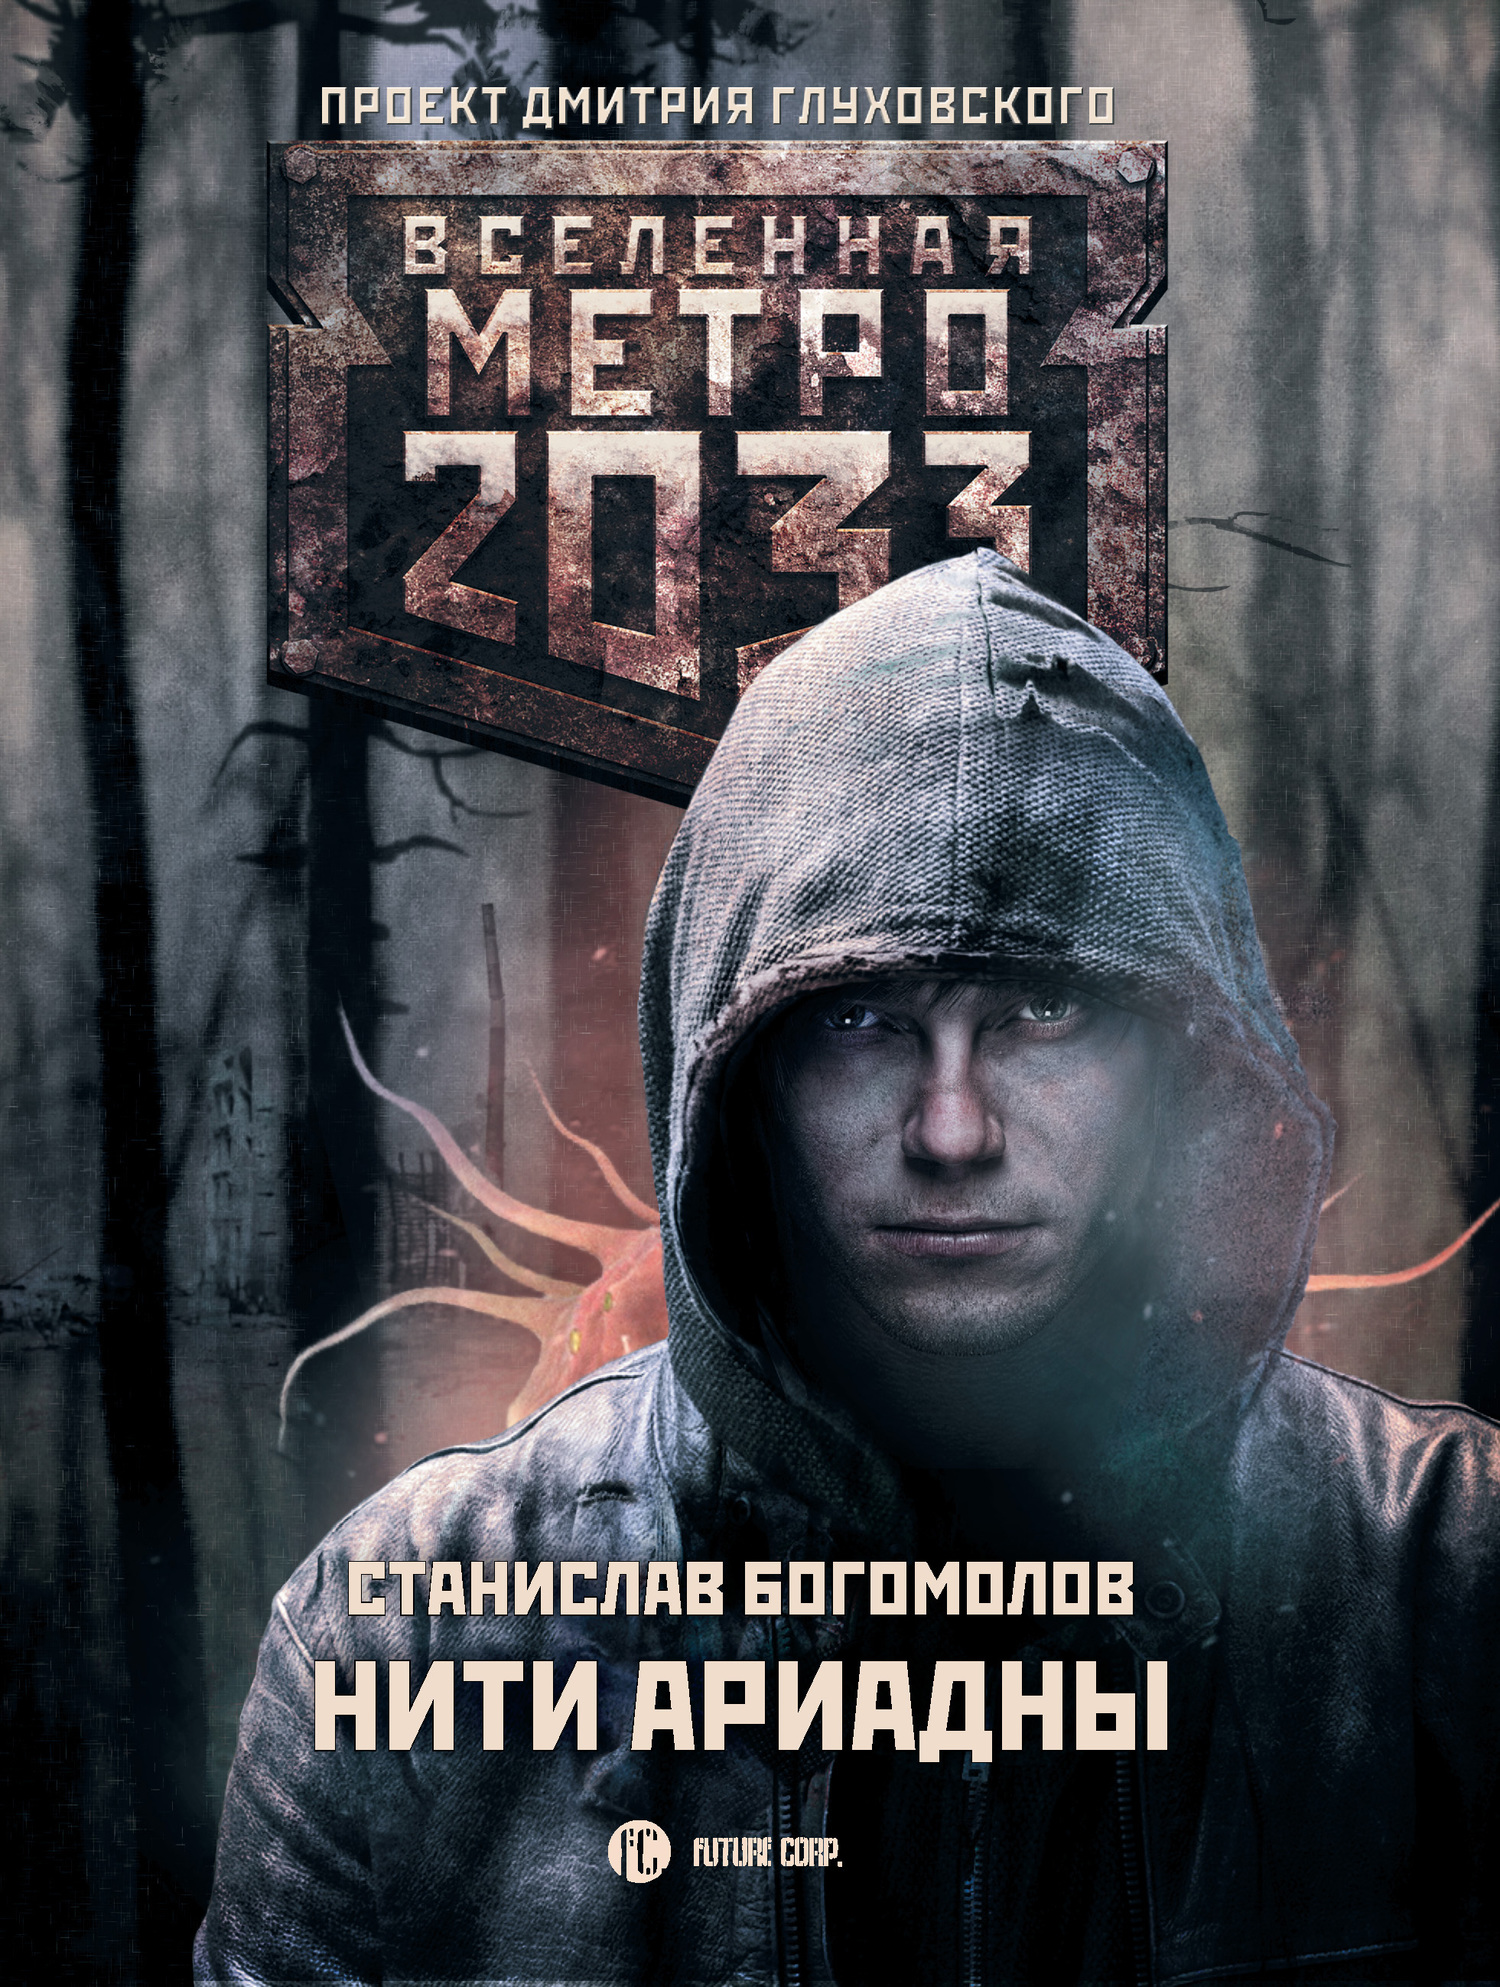 Богомолов Станислав - Метро 2033: Нити Ариадны скачать бесплатно